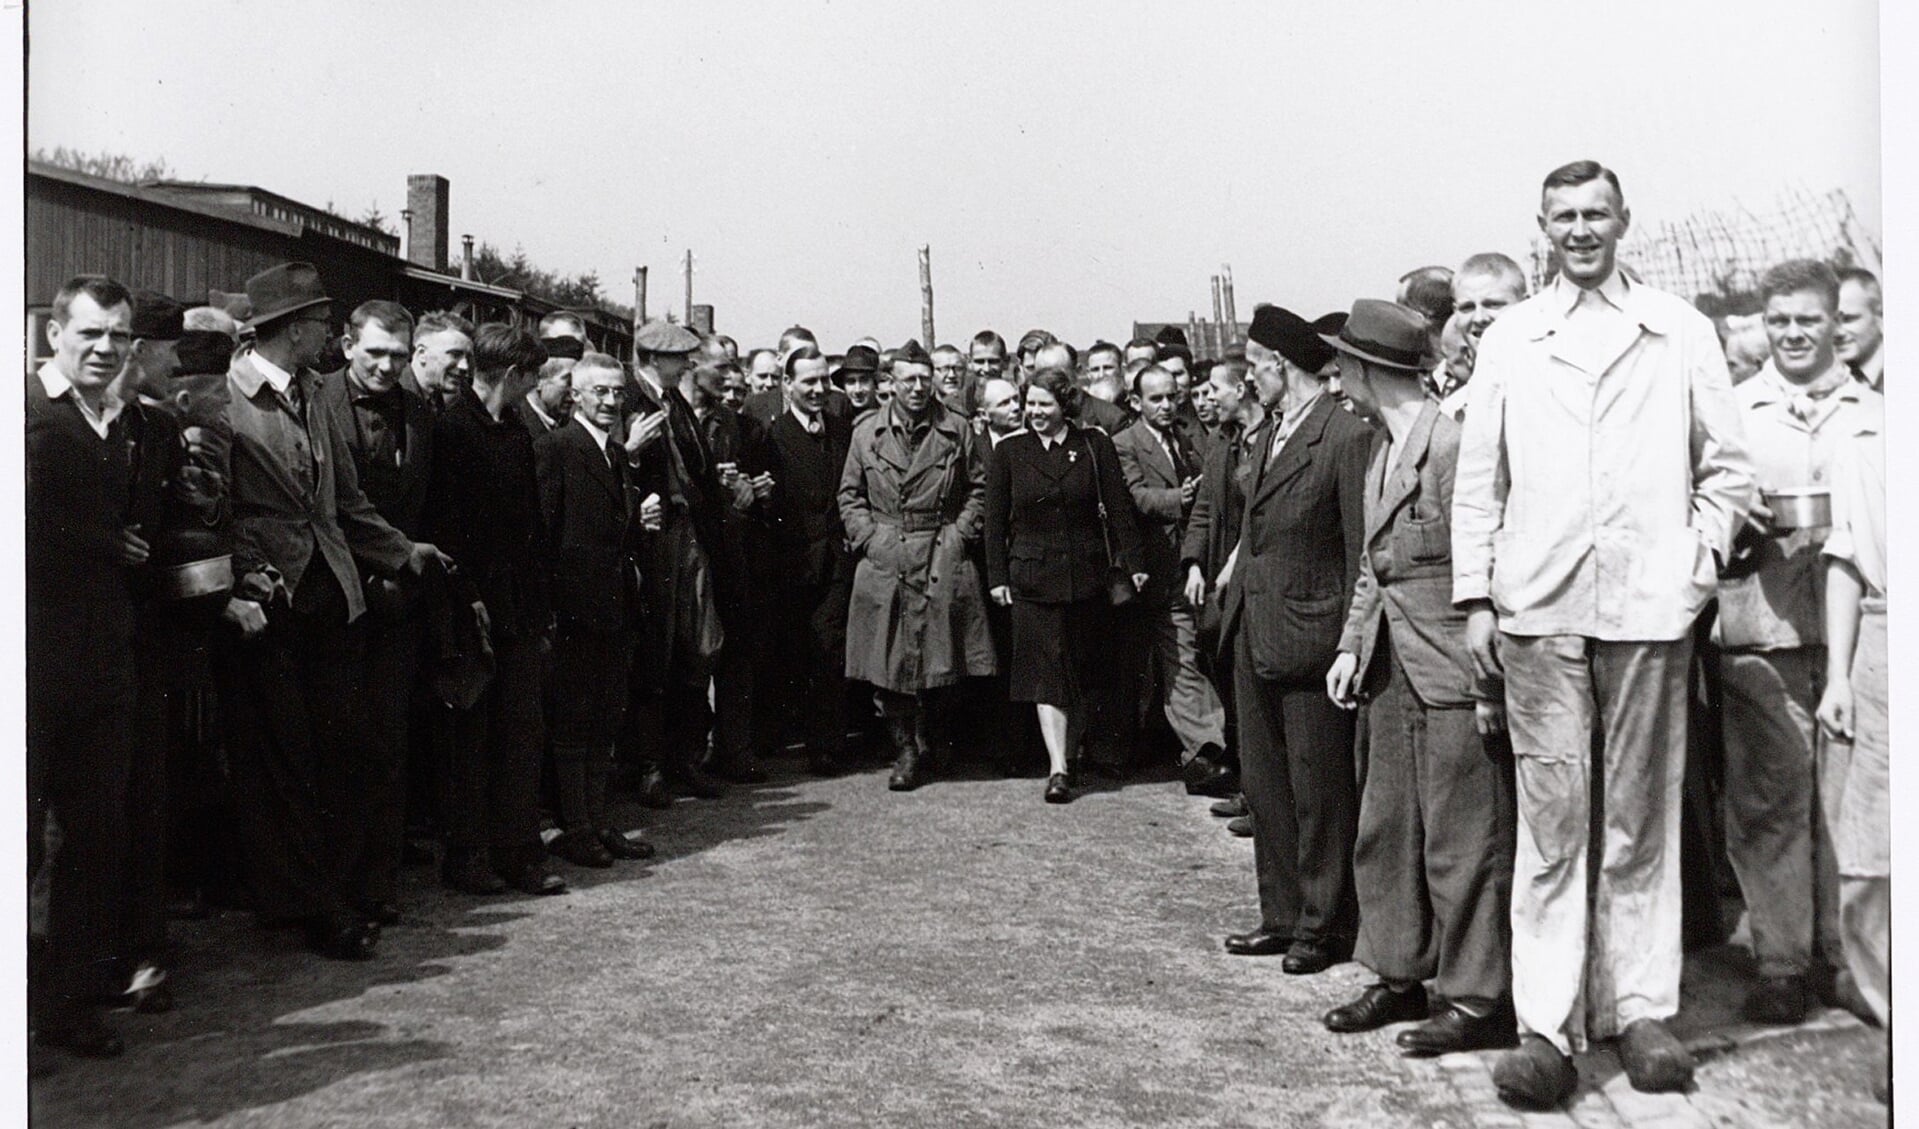 Rode Kruismedewerkster Loes van Overeem (midden) leidt de Nederlandse oorlogscorrespondent Ton van Beers rond bij de bevrijding van Kamp Amersfoort op 7 mei 1945.